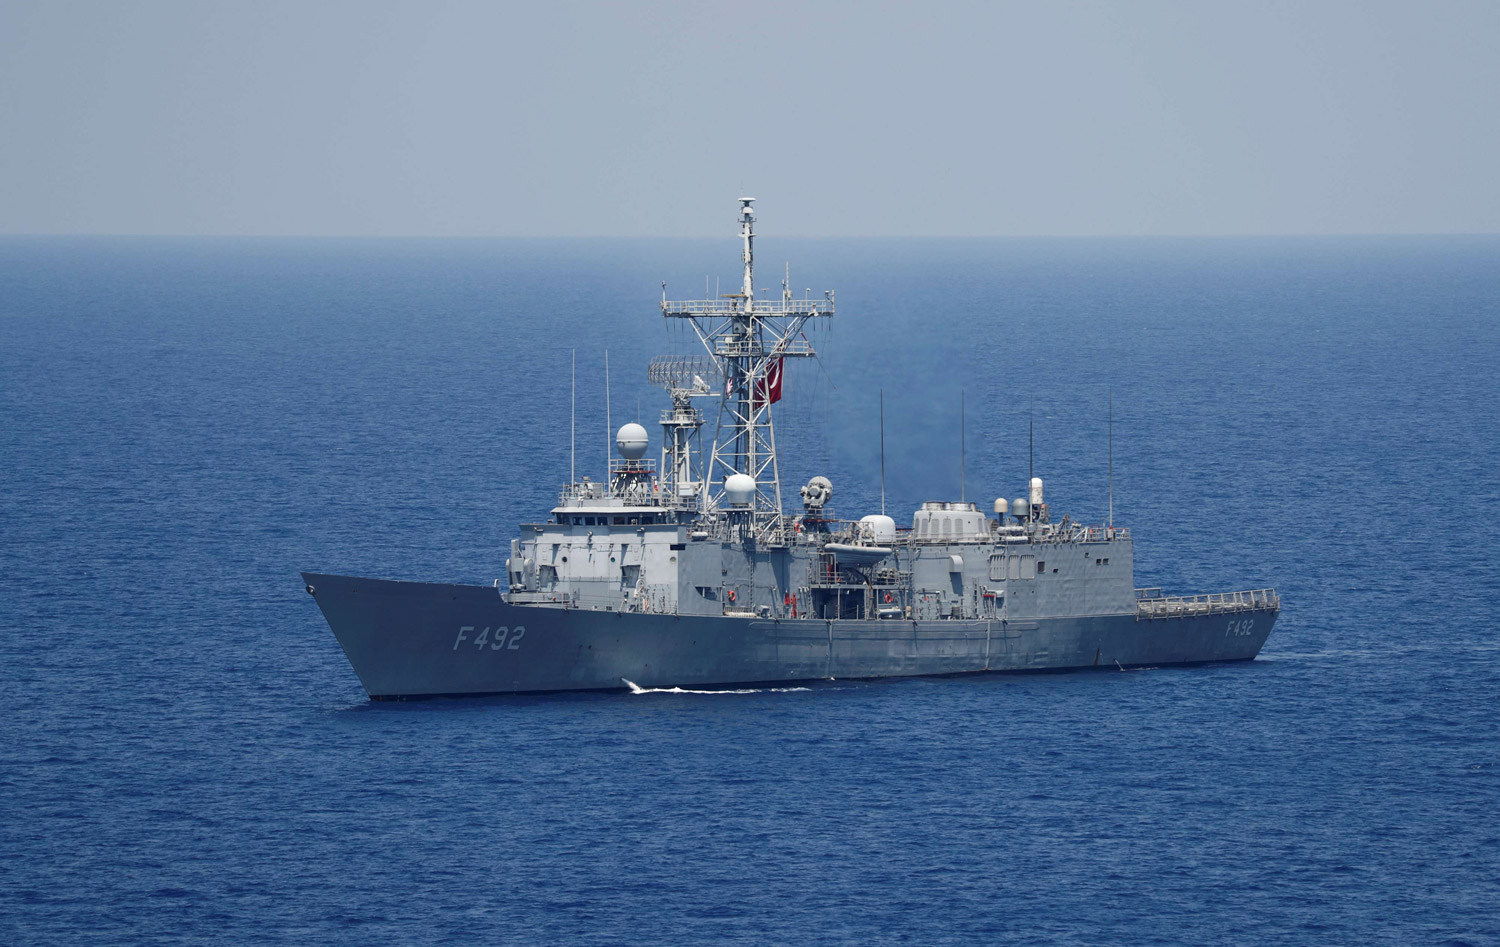  ثلاث سفن حربية تركية تدخلت لمنع قوات "أيريني" من تفتيش سفينة الأسلحة